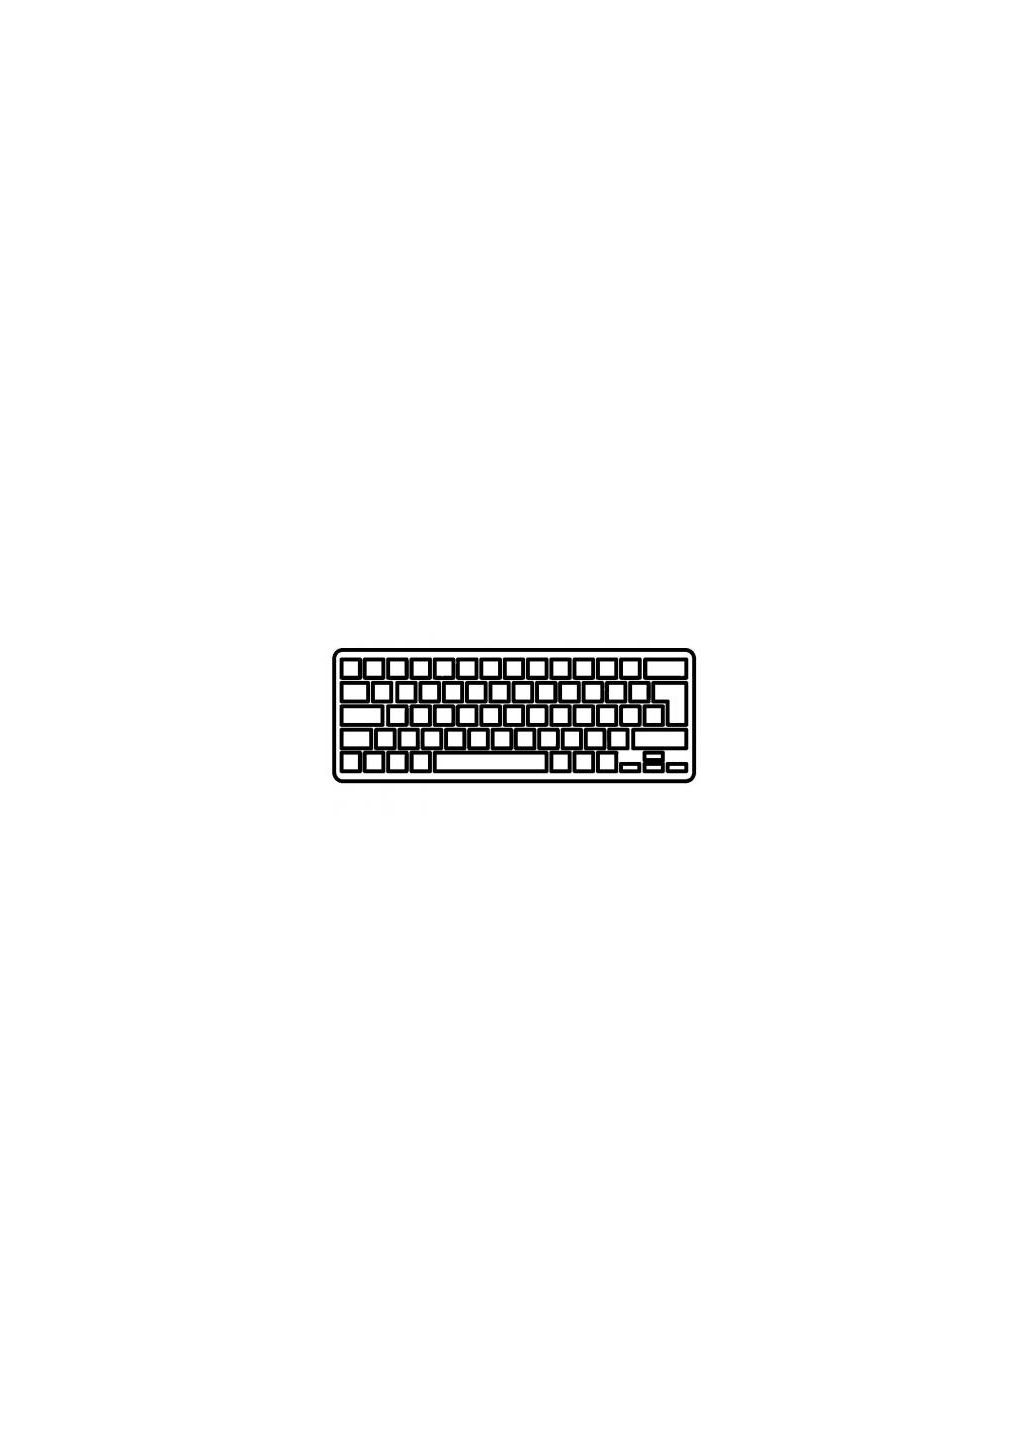 Клавиатура ноутбука Mini 102/110c/110c1000/CQ10-100 Series черная UA (A43346) HP mini 102/110c/110c-1000/cq10-100 series черная ua (276707679)